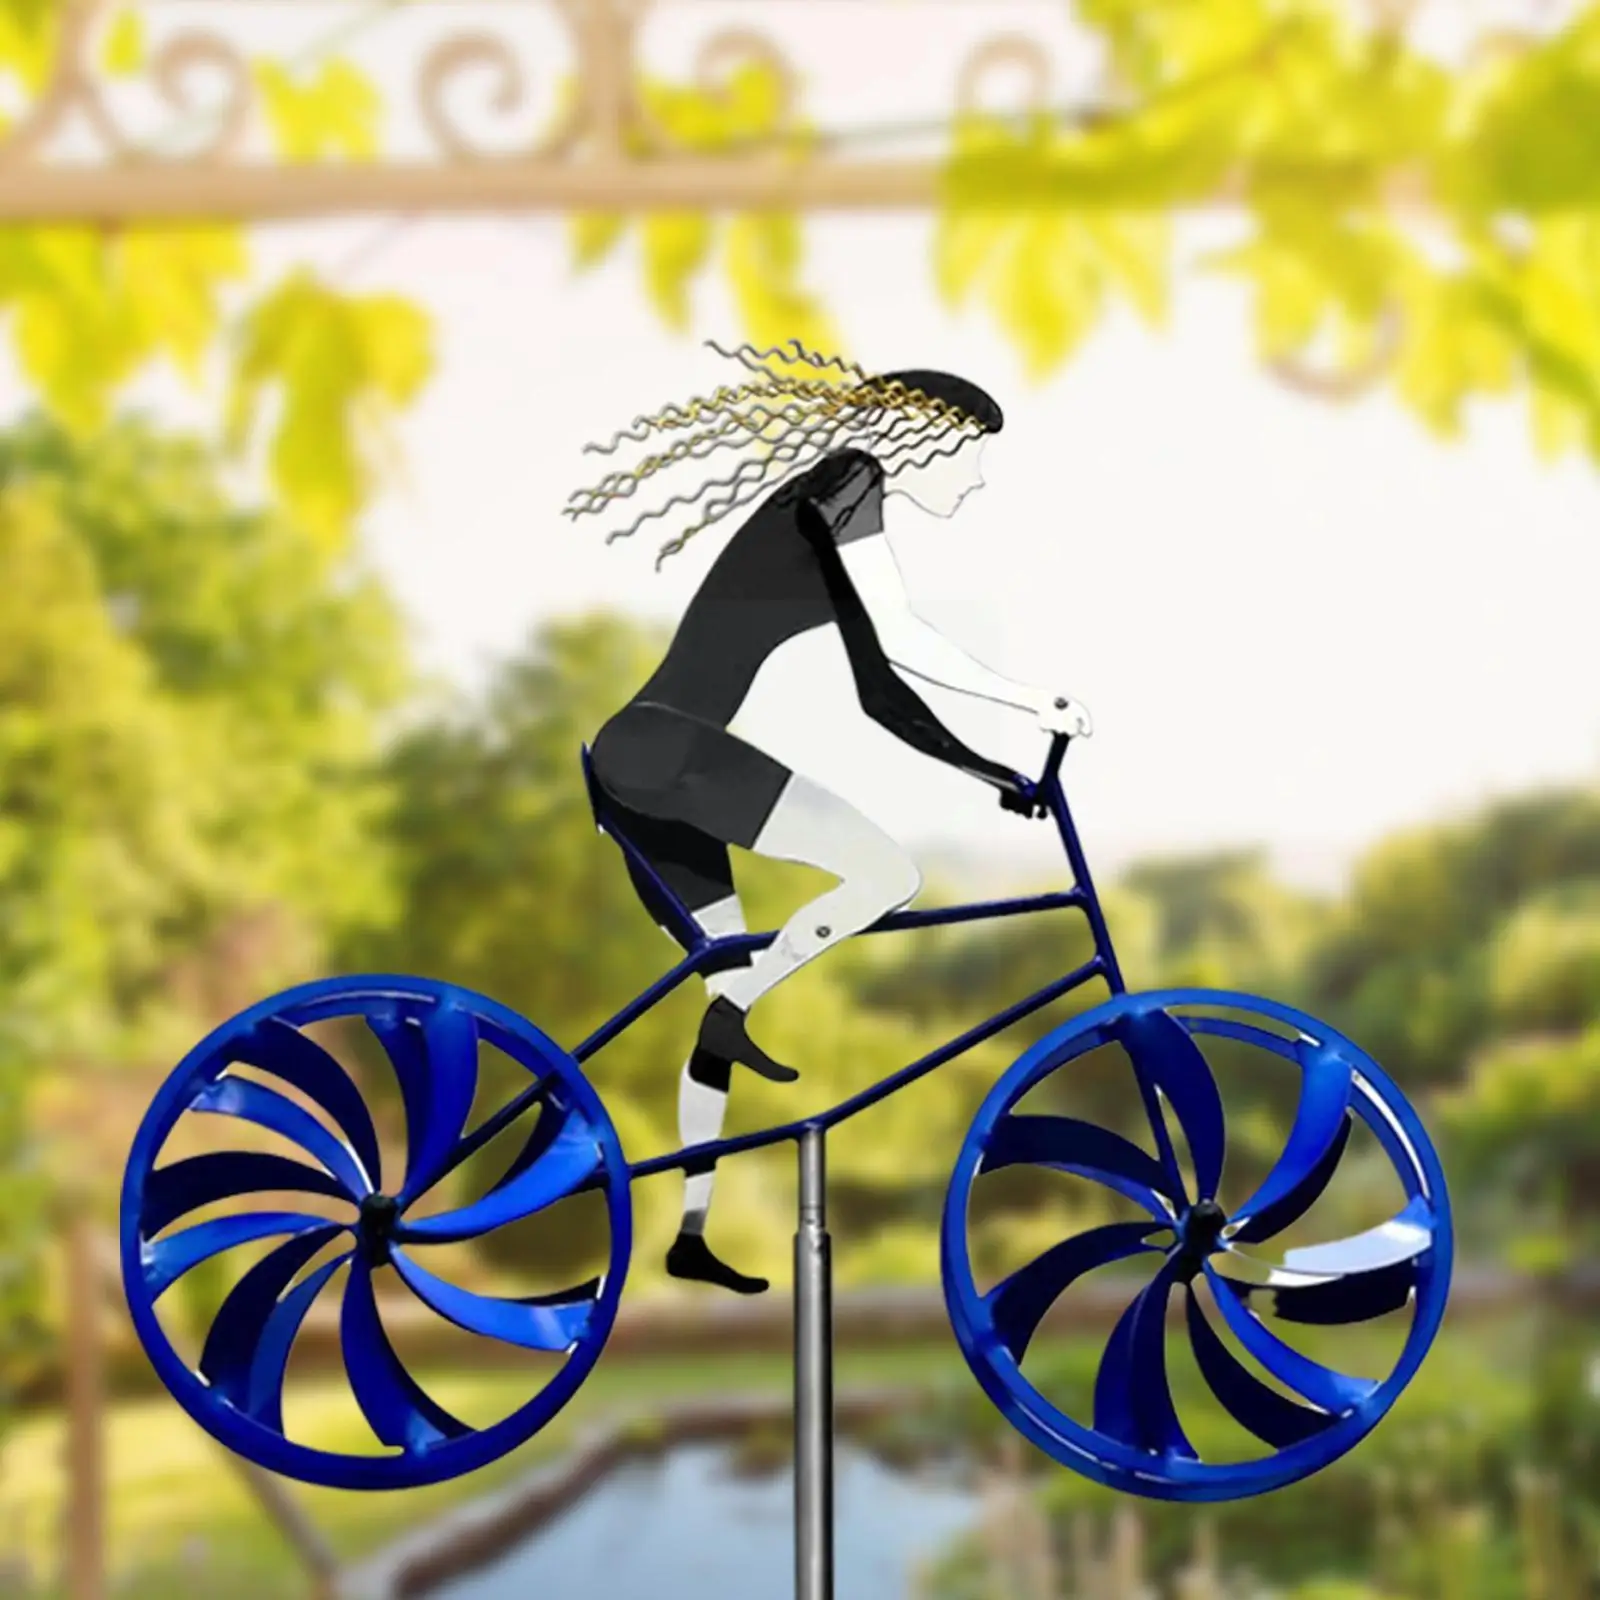 

Кинетическая велосипедная скульптура для сада, 3d велосипед, Спиннер, орнамент, скульптура, ремень, велосипедная скульптура для сада N3u2